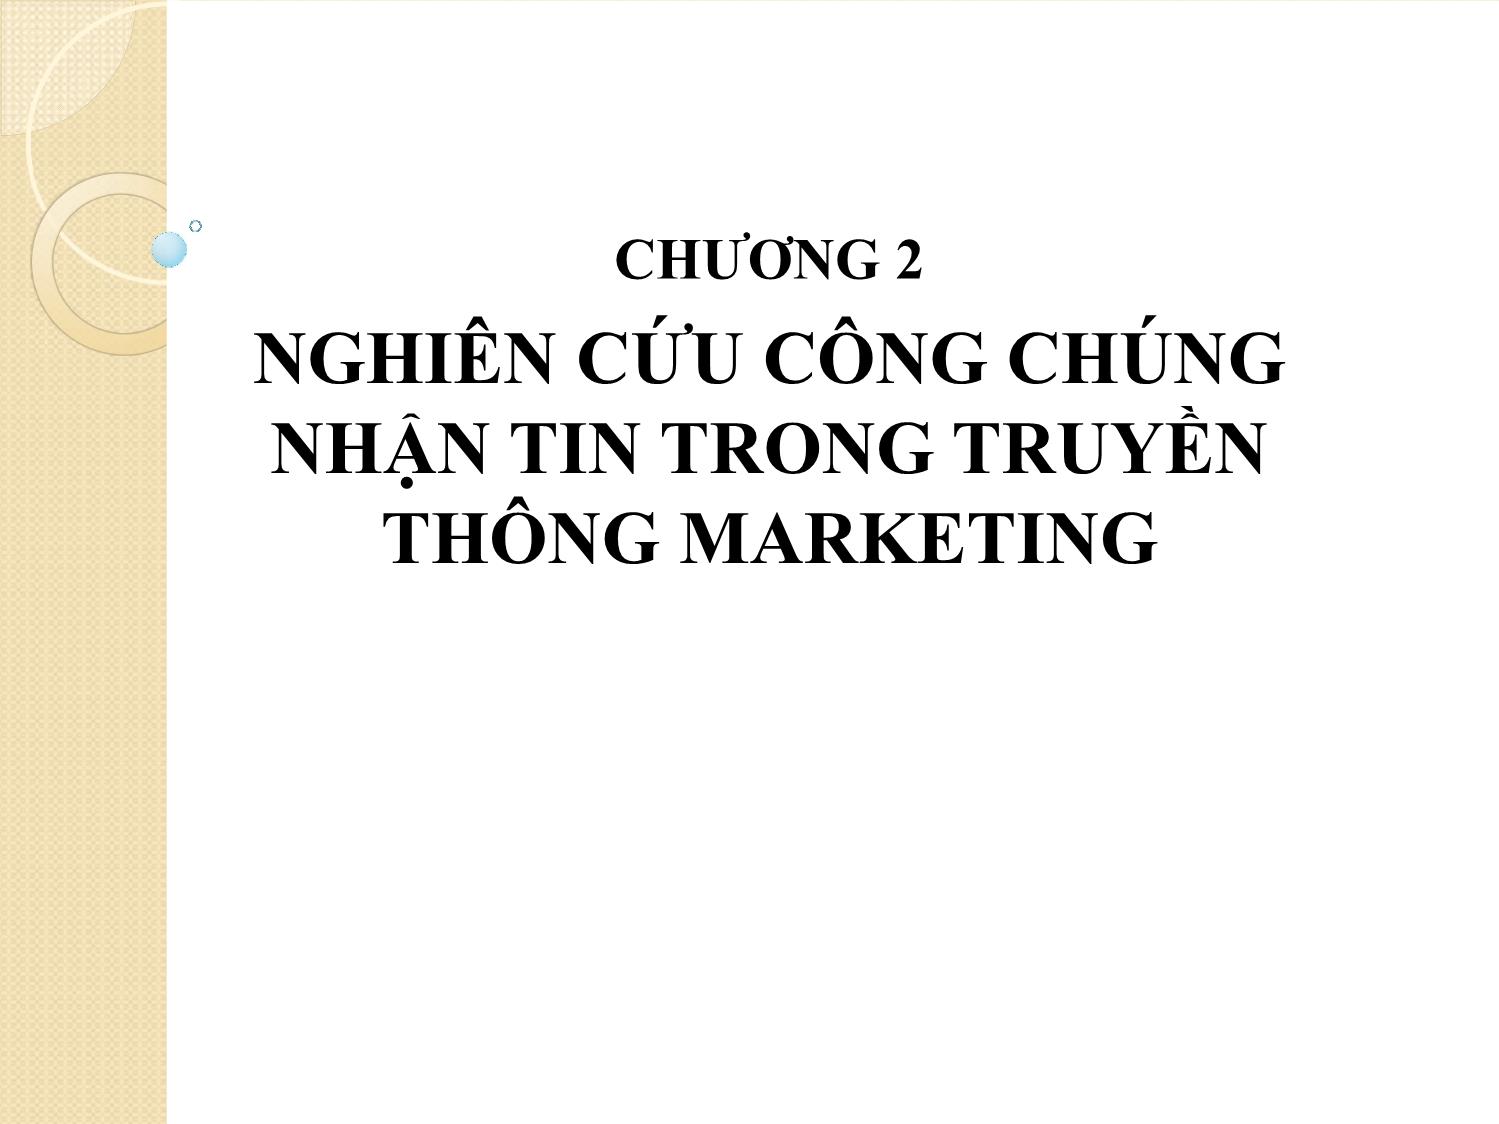 Bài giảng Truyền thông marketing tích hợp - Chương 2: Nghiên cứu công chúng nhận tin trong truyền thông marketing trang 1